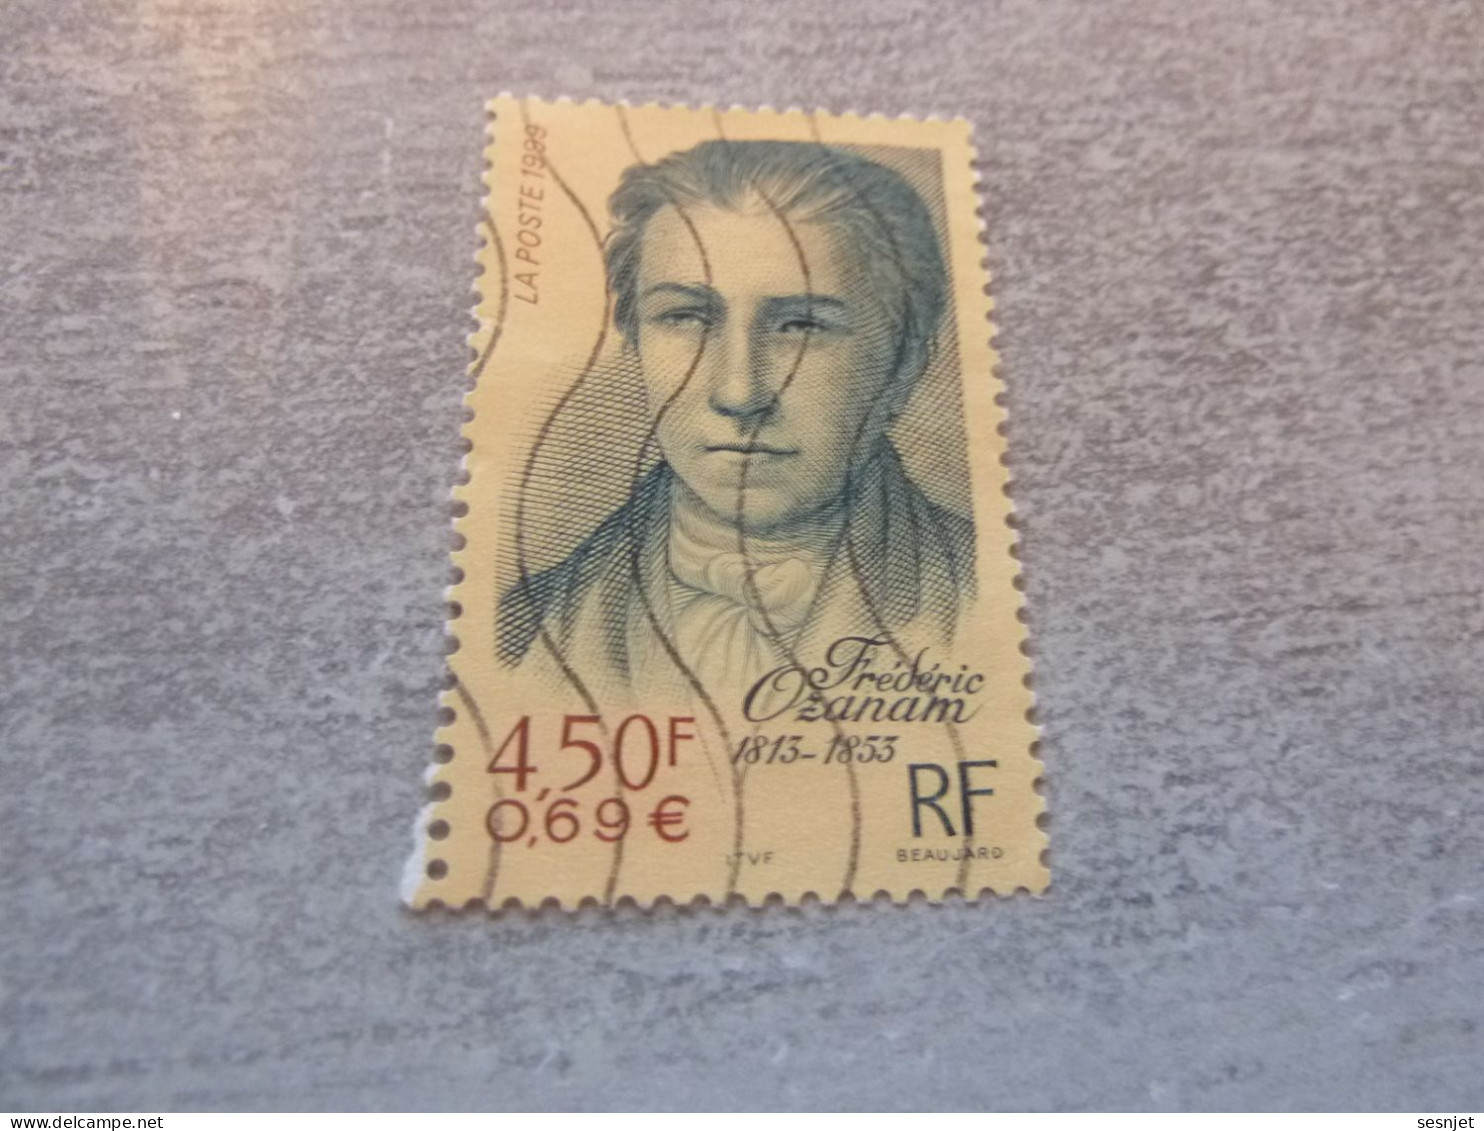 Frédéric Ozanam (1813-1853) Historien - 4f.50 (0.69 €) - Yt 3281 - Multicolore - Oblitéré - Année 1999 - - Used Stamps